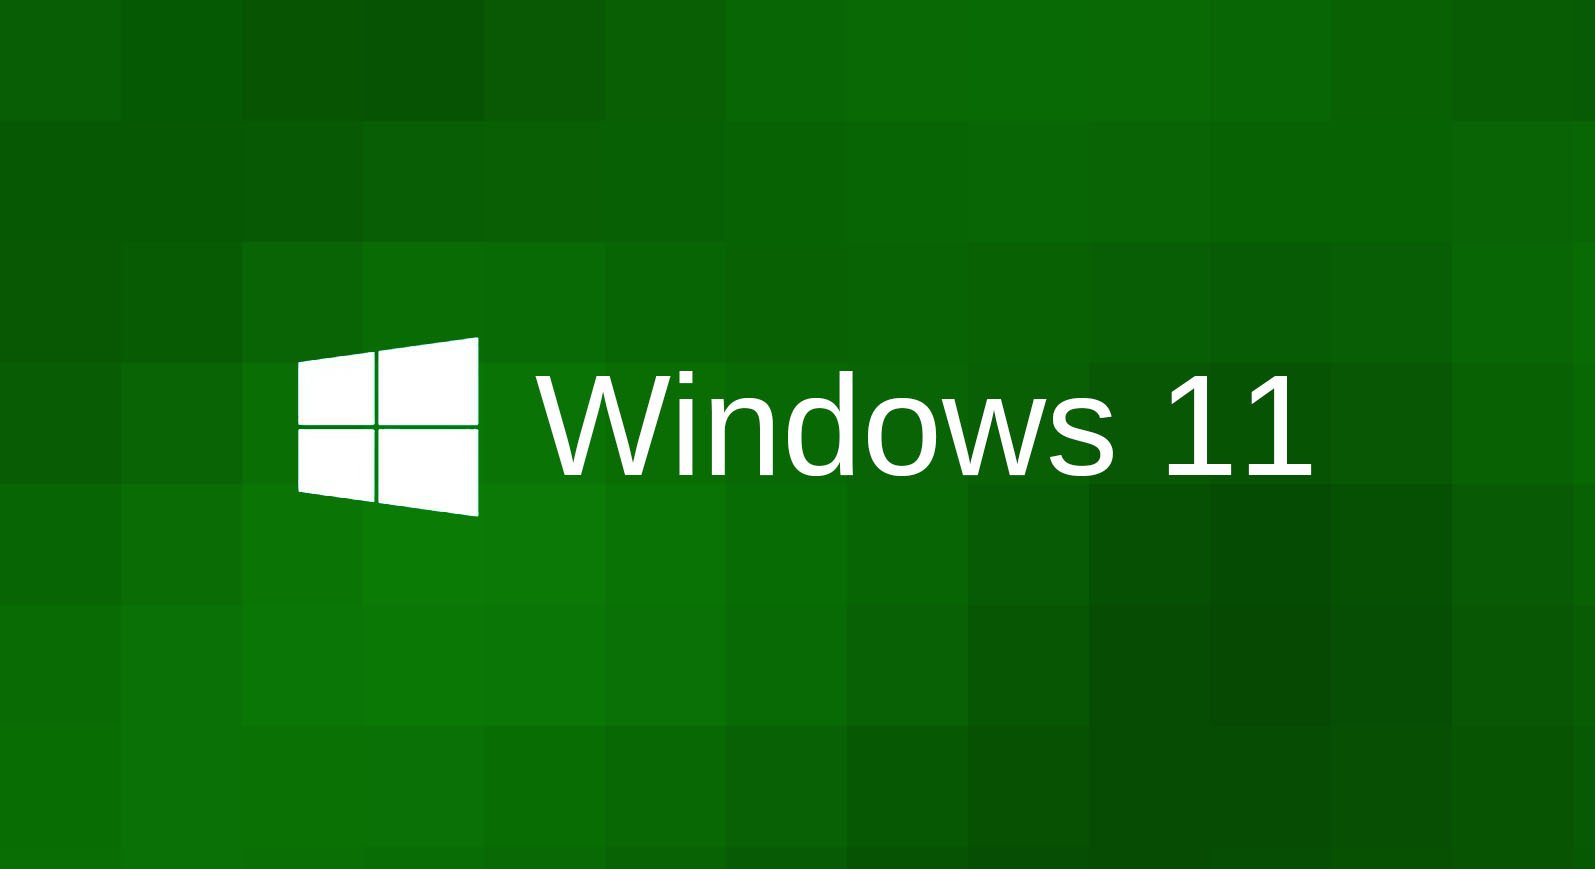 Образ виндовс 11. Microsoft Windows 11. Логотип виндовс 11. Виндовс 11 Дата. Заставка виндовс 11.